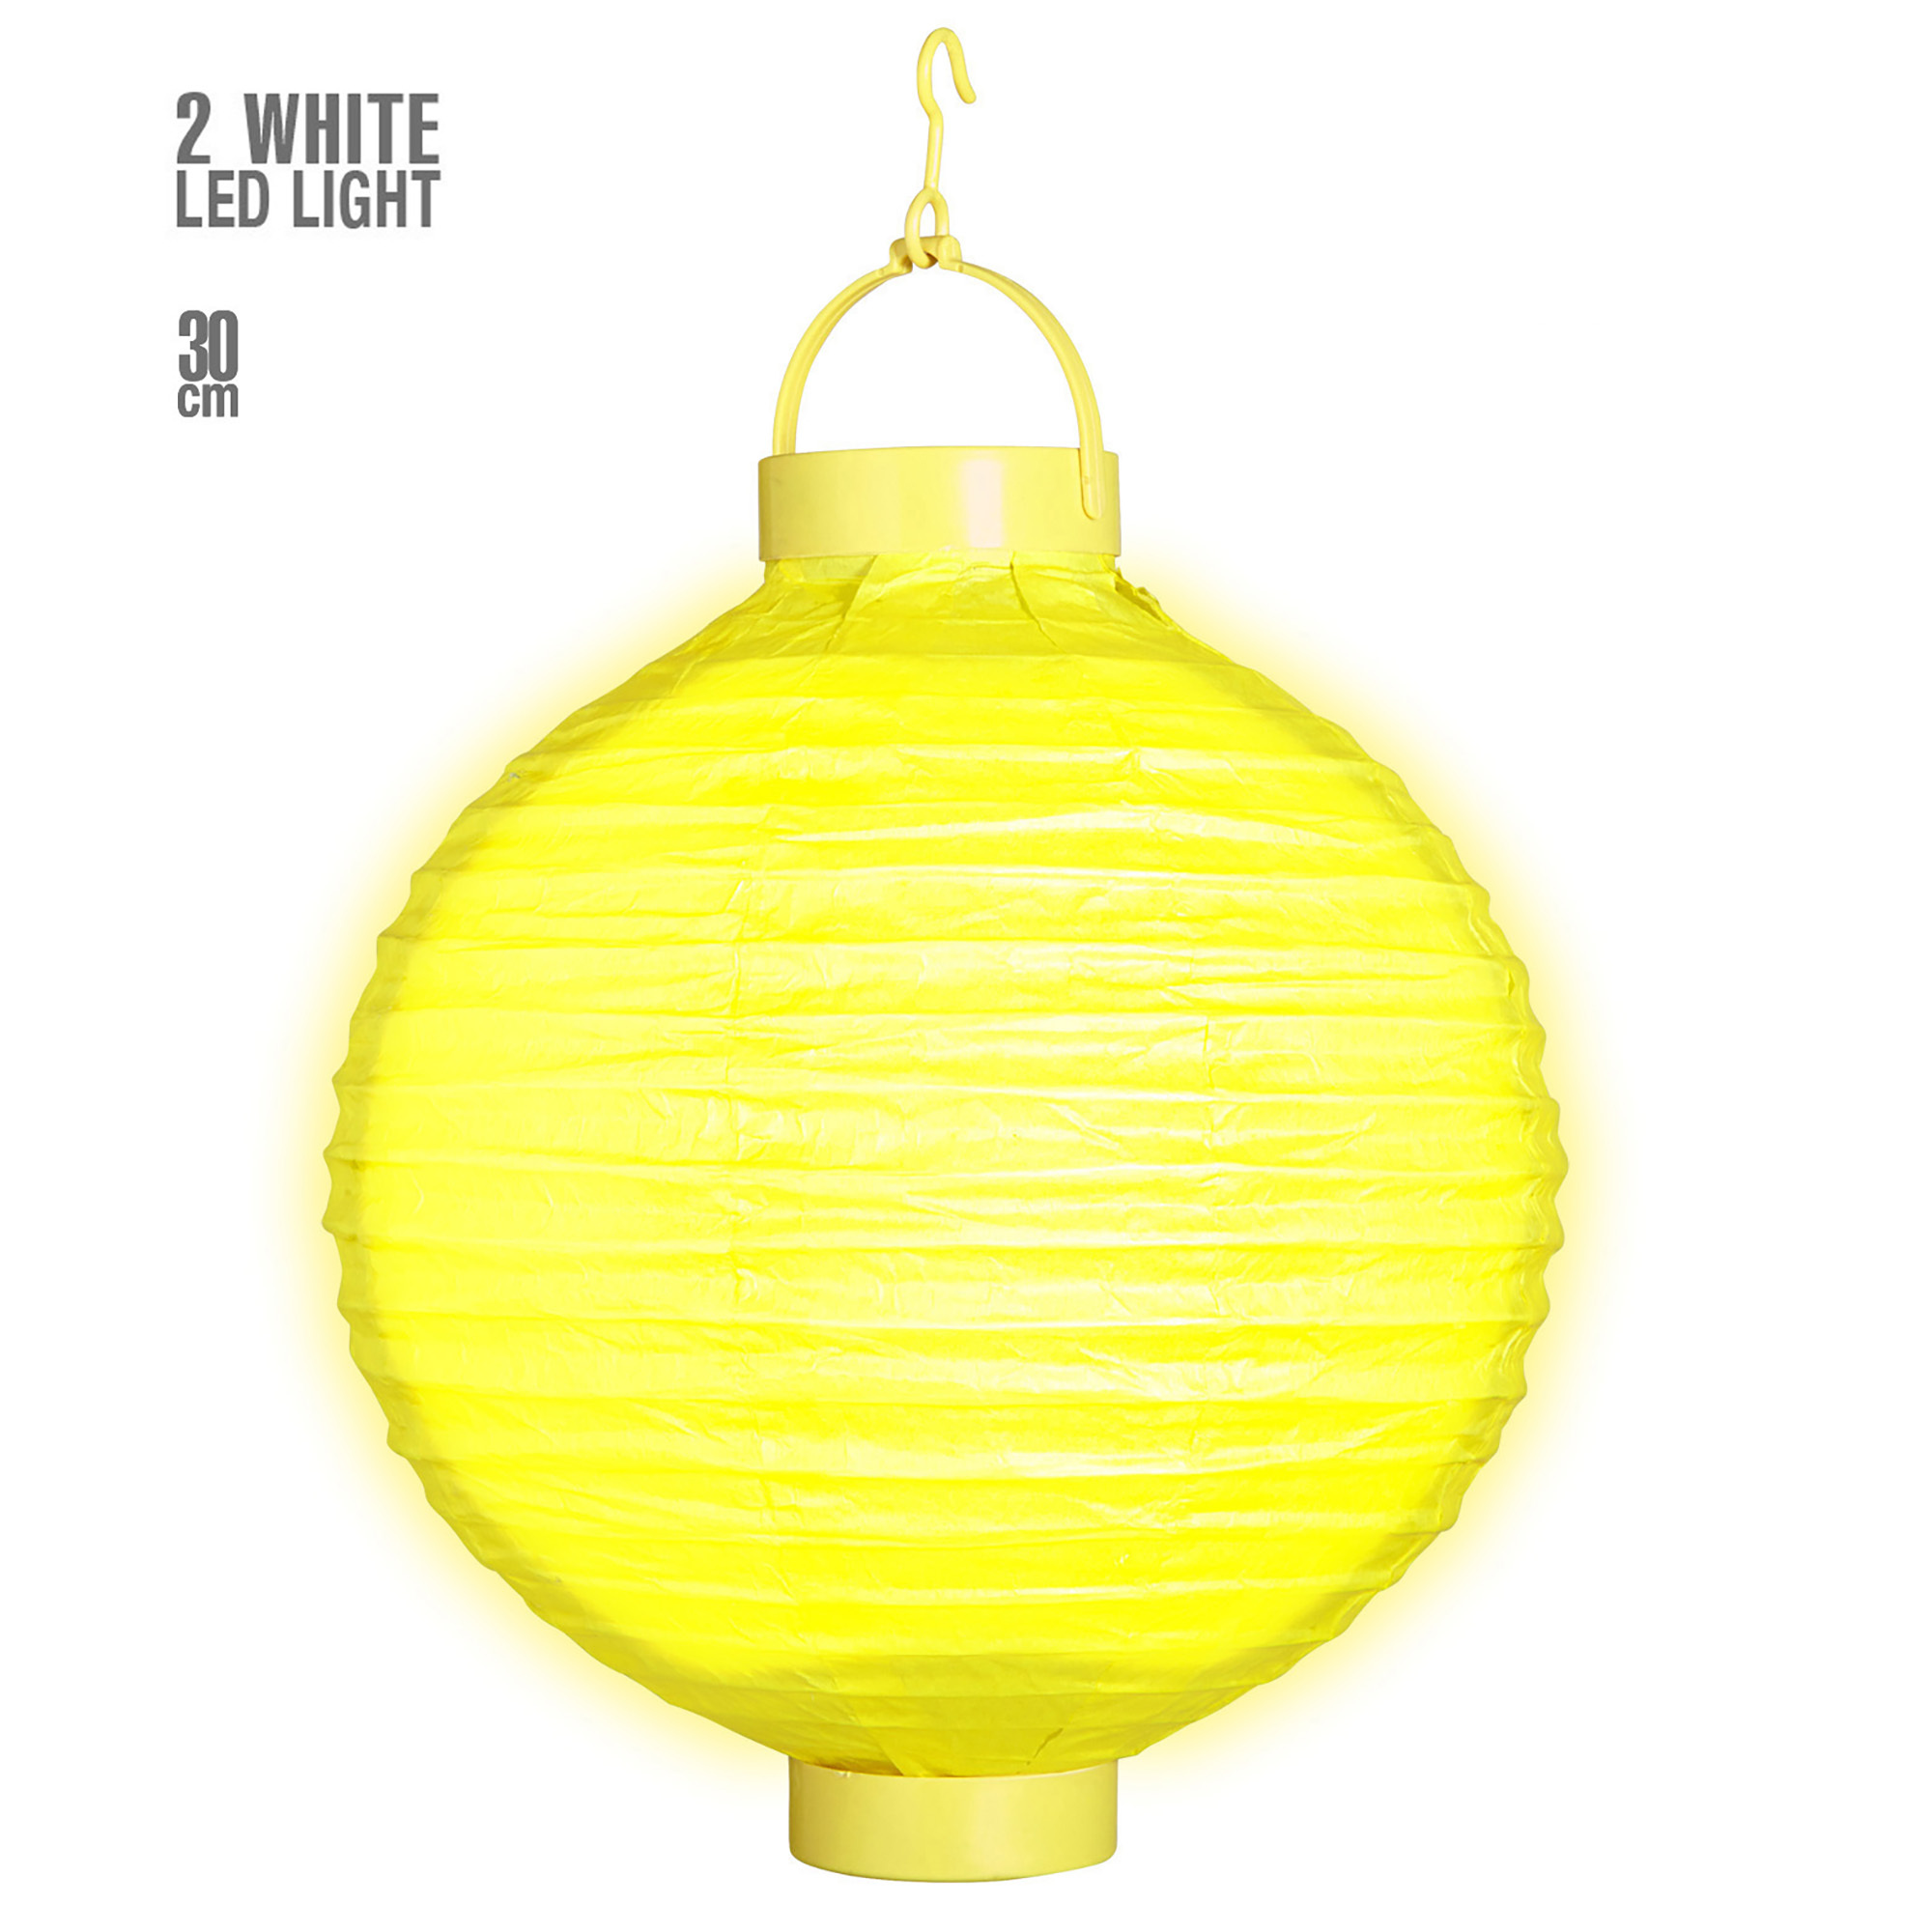 lampion met licht 30cm geel